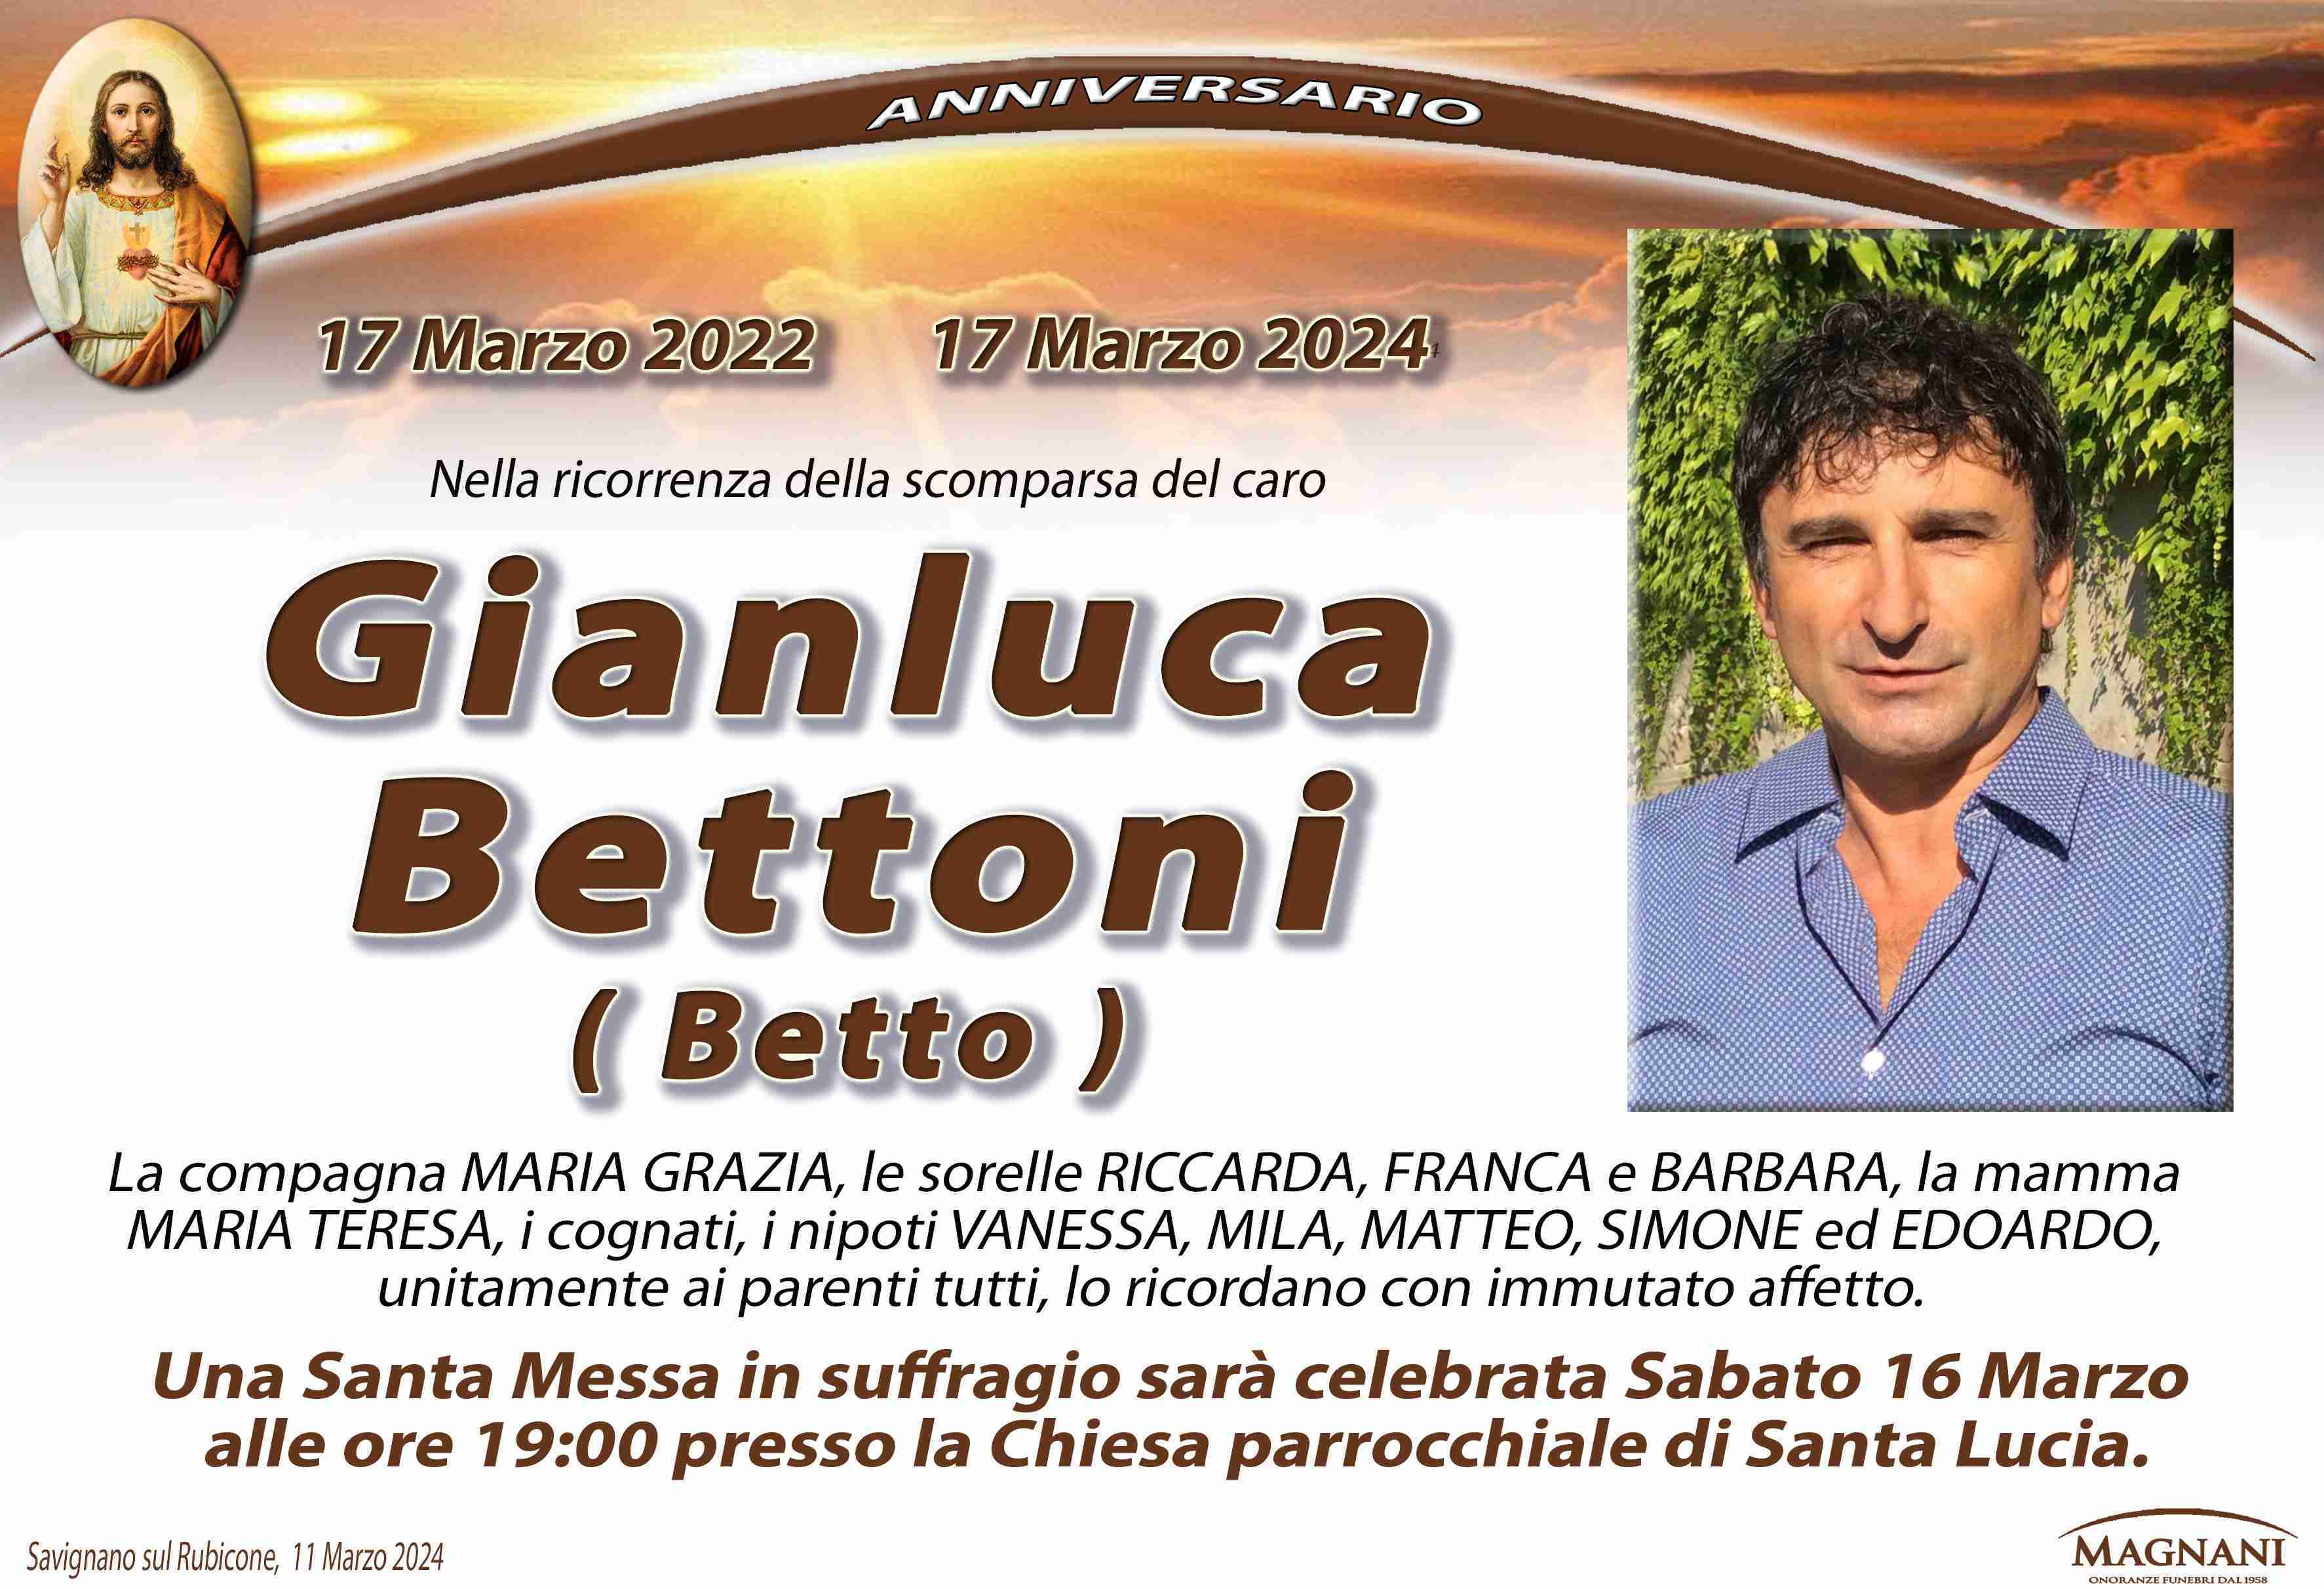 Gianluca Bettoni